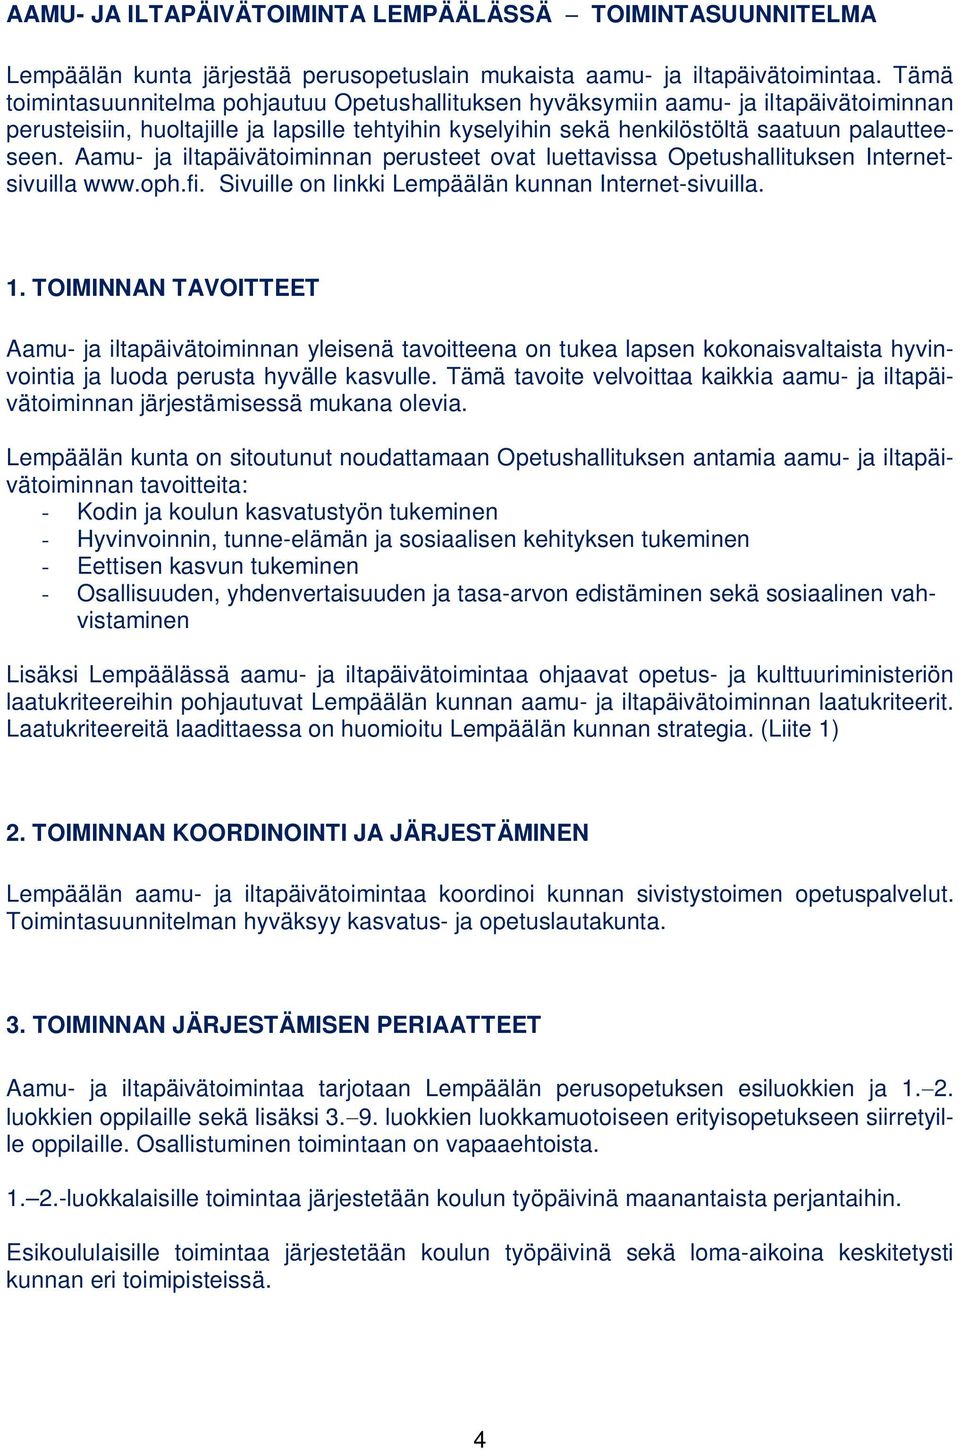 Aamu- ja iltapäivätoiminnan perusteet ovat luettavissa Opetushallituksen Internetsivuilla www.oph.fi. Sivuille on linkki Lempäälän kunnan Internet-sivuilla. 1.